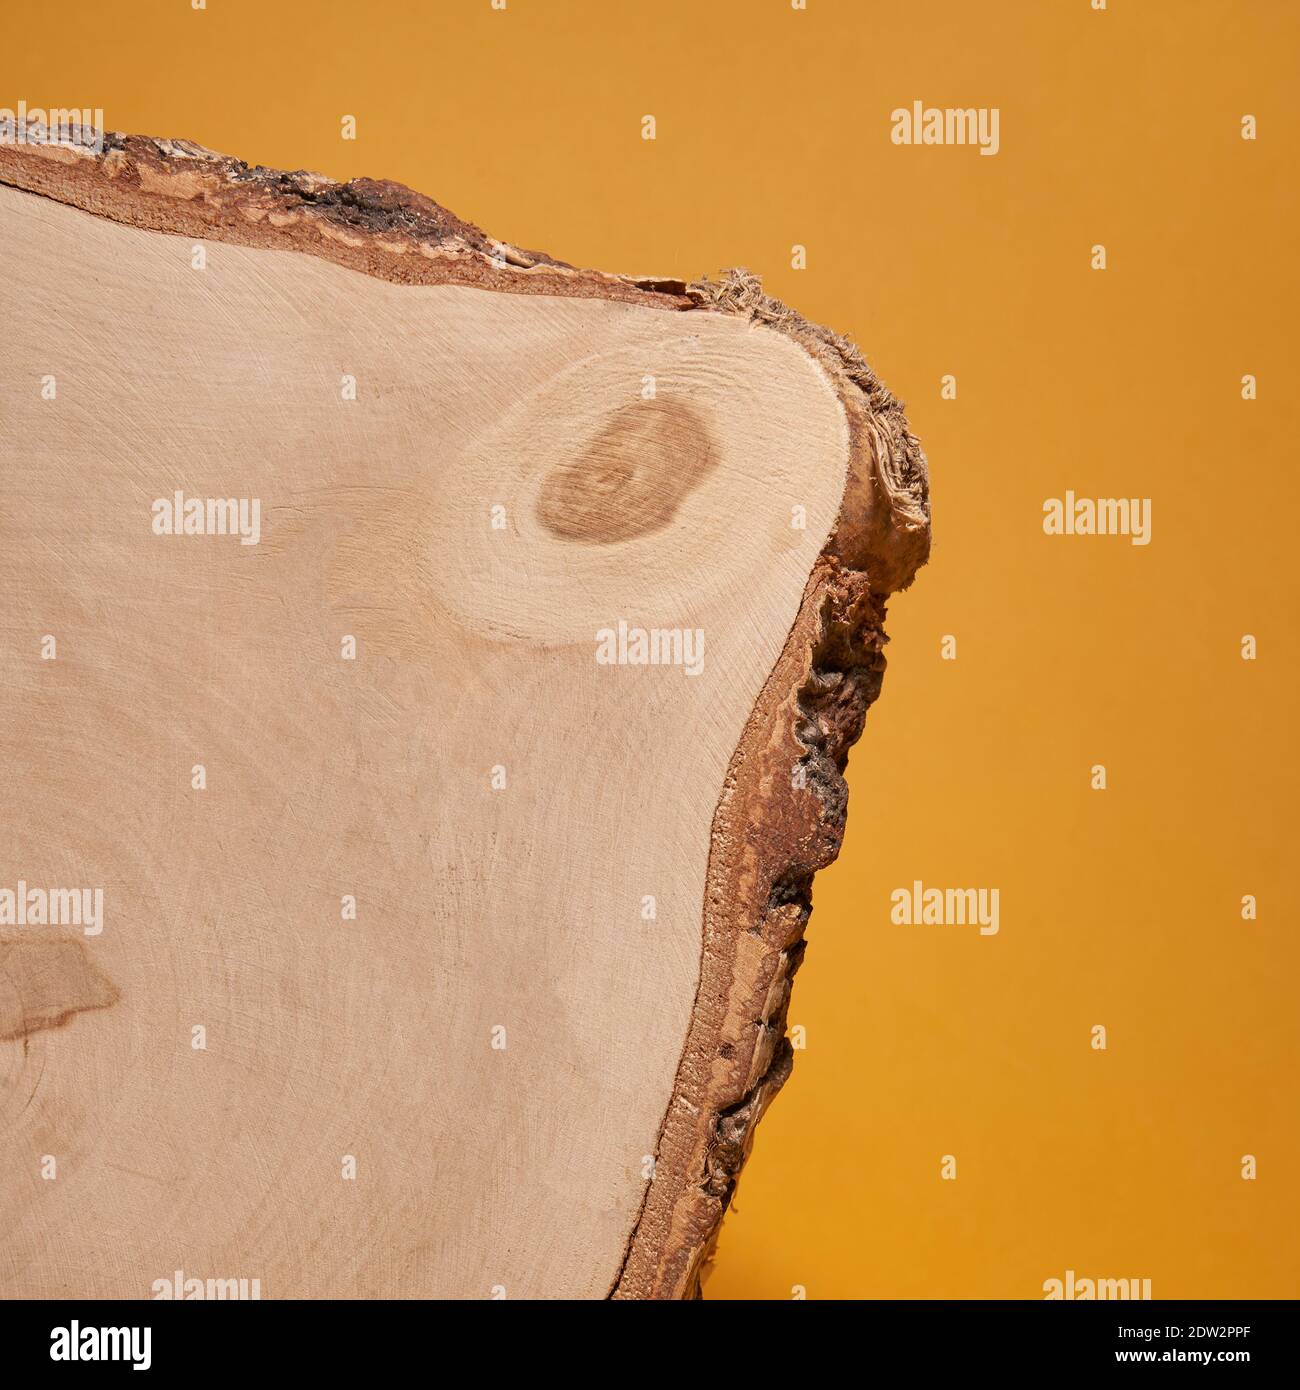 Schneiden Sie Birke Textur auf einem hellen gelben Hintergrund, natürliche Materialien, Platz für Ihr Produkt. Hochwertige Fotos Stockfoto